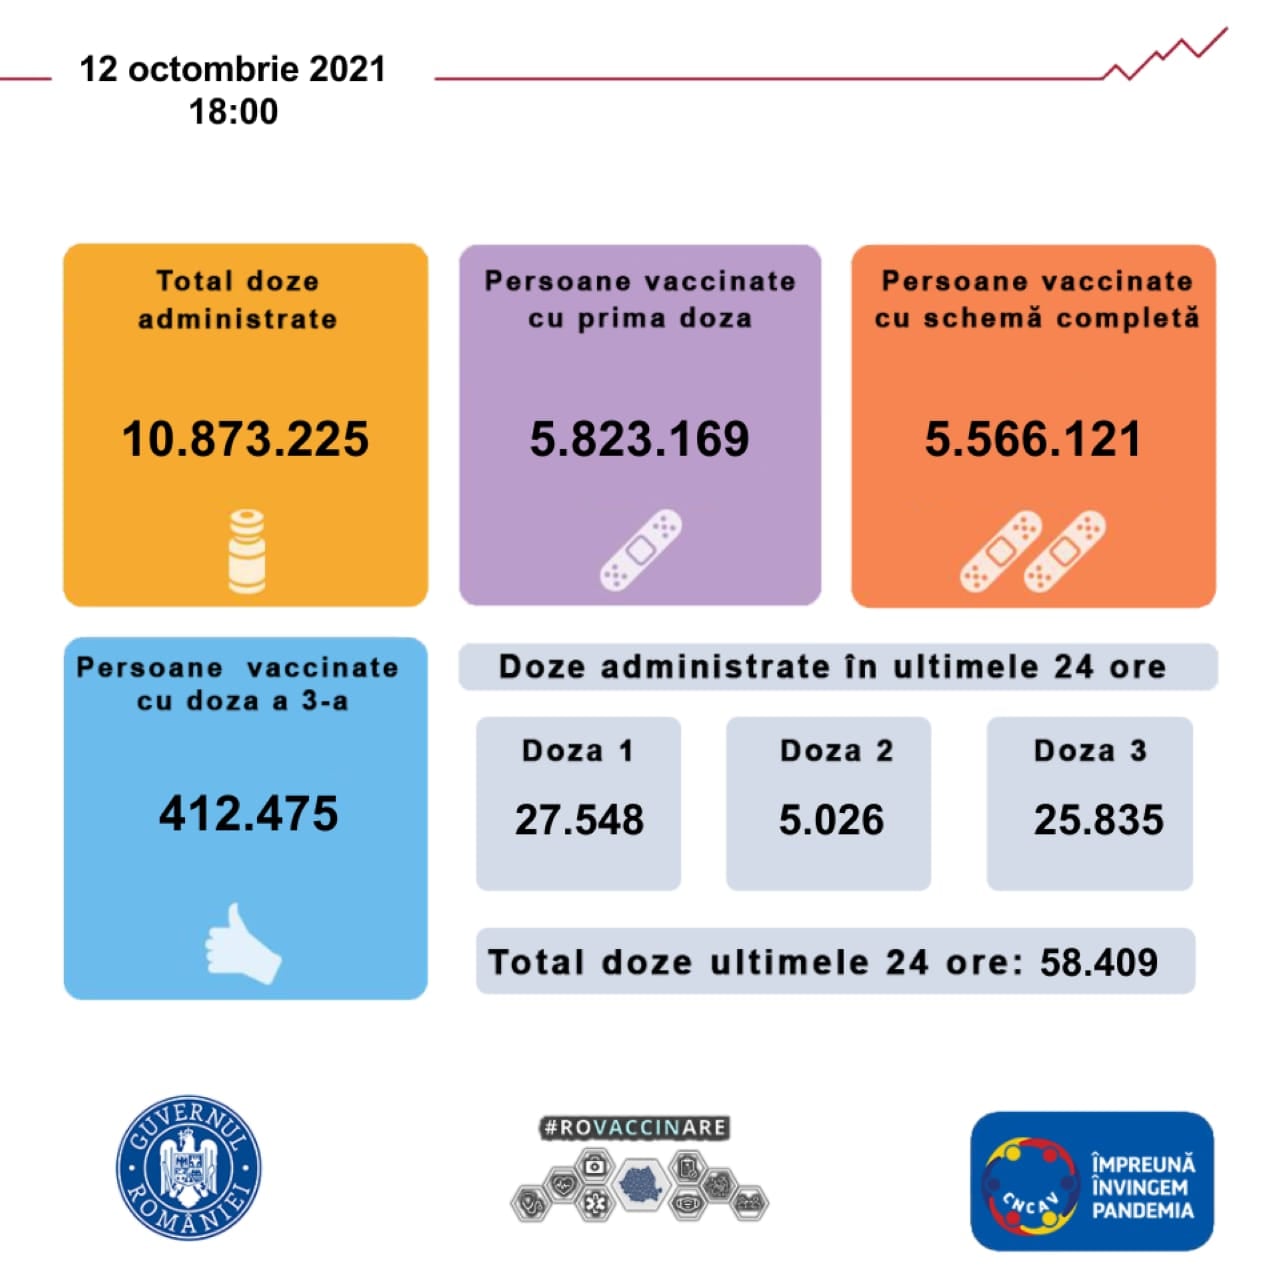 Regering van Roemenië 5.8 miljoen Roemenen zijn tot nu toe in het land ingeënt